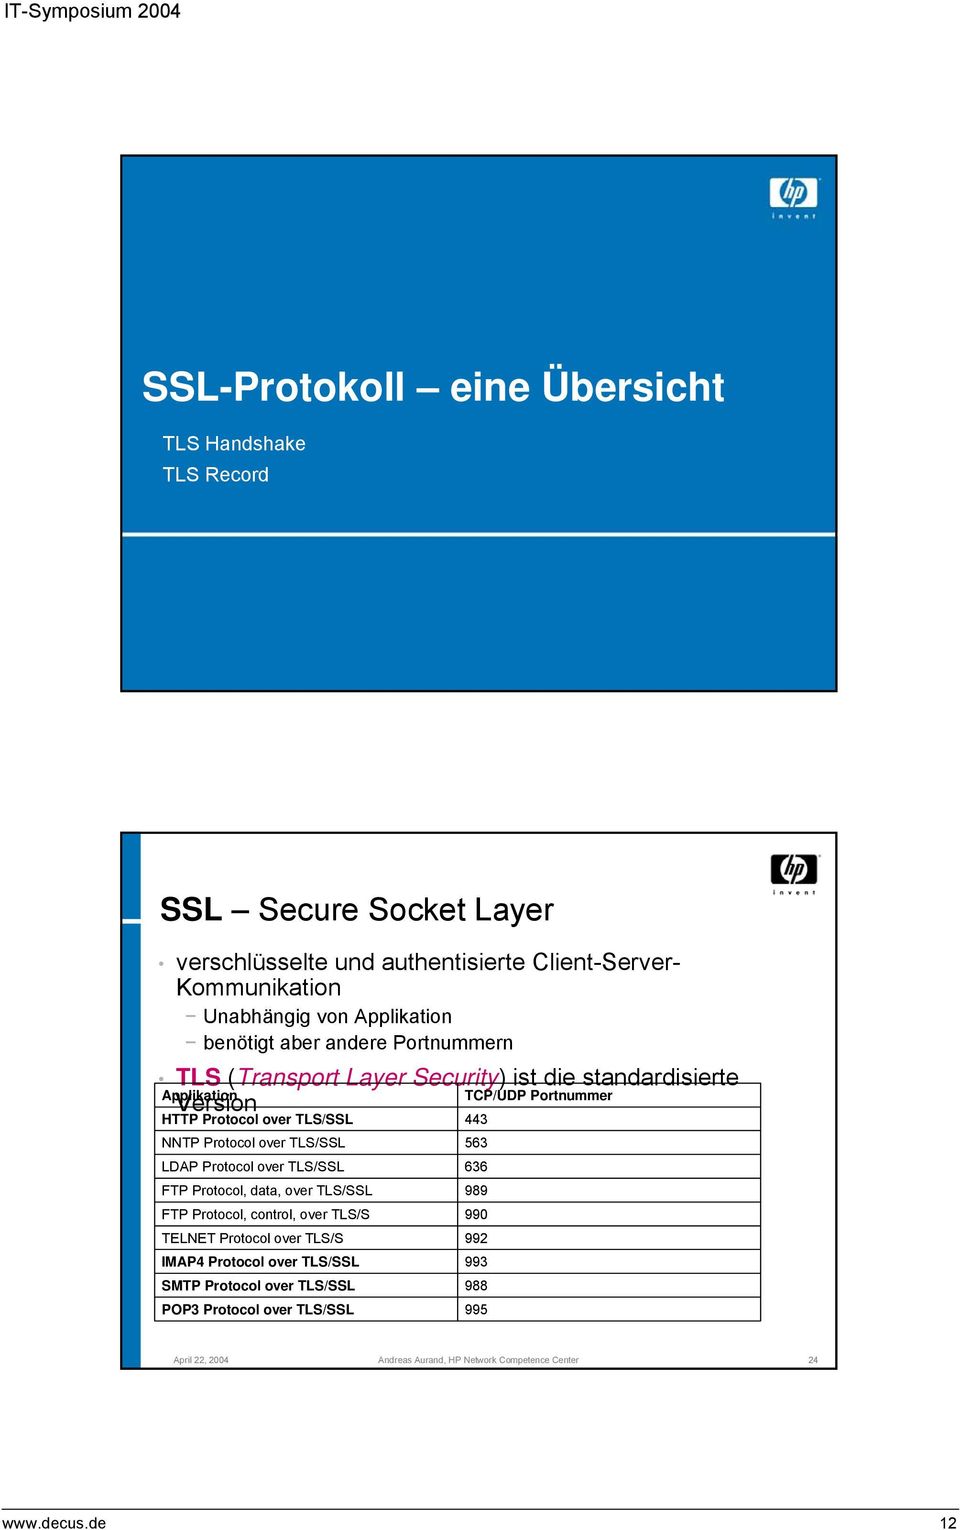 TLS/SSL NNTP Protocol over TLS/SSL LDAP Protocol over TLS/SSL FTP Protocol, data, over TLS/SSL FTP Protocol, control, over TLS/S TELNET Protocol over TLS/S IMAP4